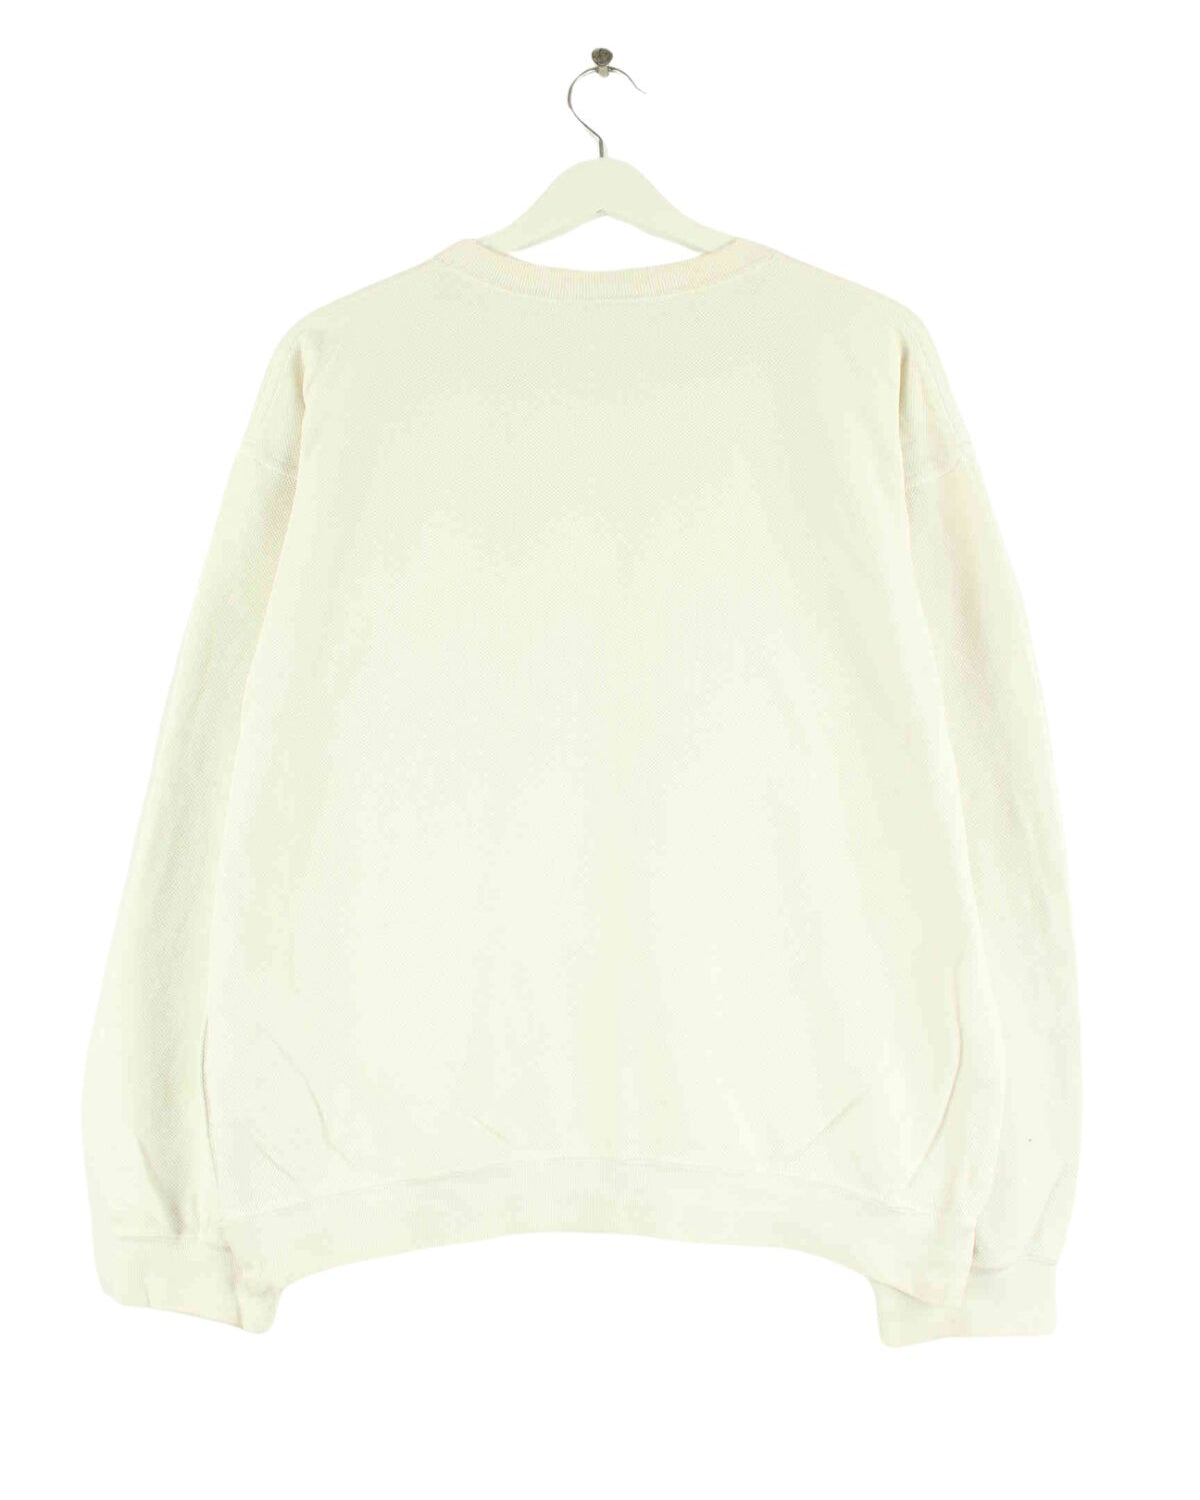 Lacoste Basic Sweater Beige M (back image)